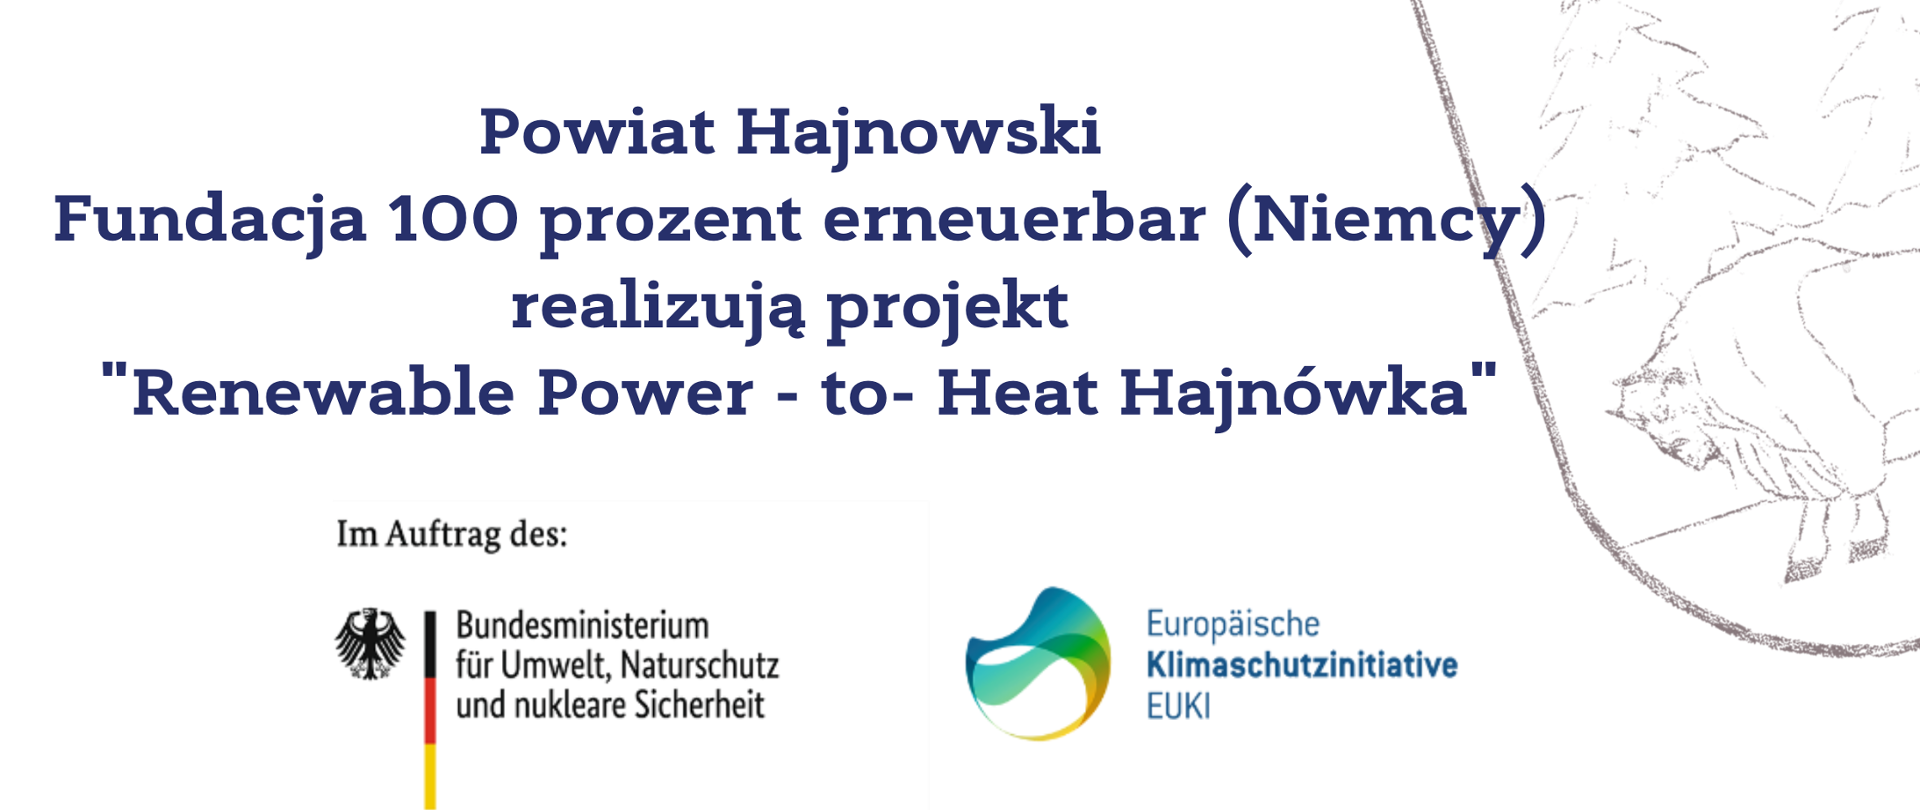 Powiat Hajnowski Fundacja 100 prozent erneuerbar (Niemcy) realizują projekt "Renewable Power - to- Heat Hajnówka"